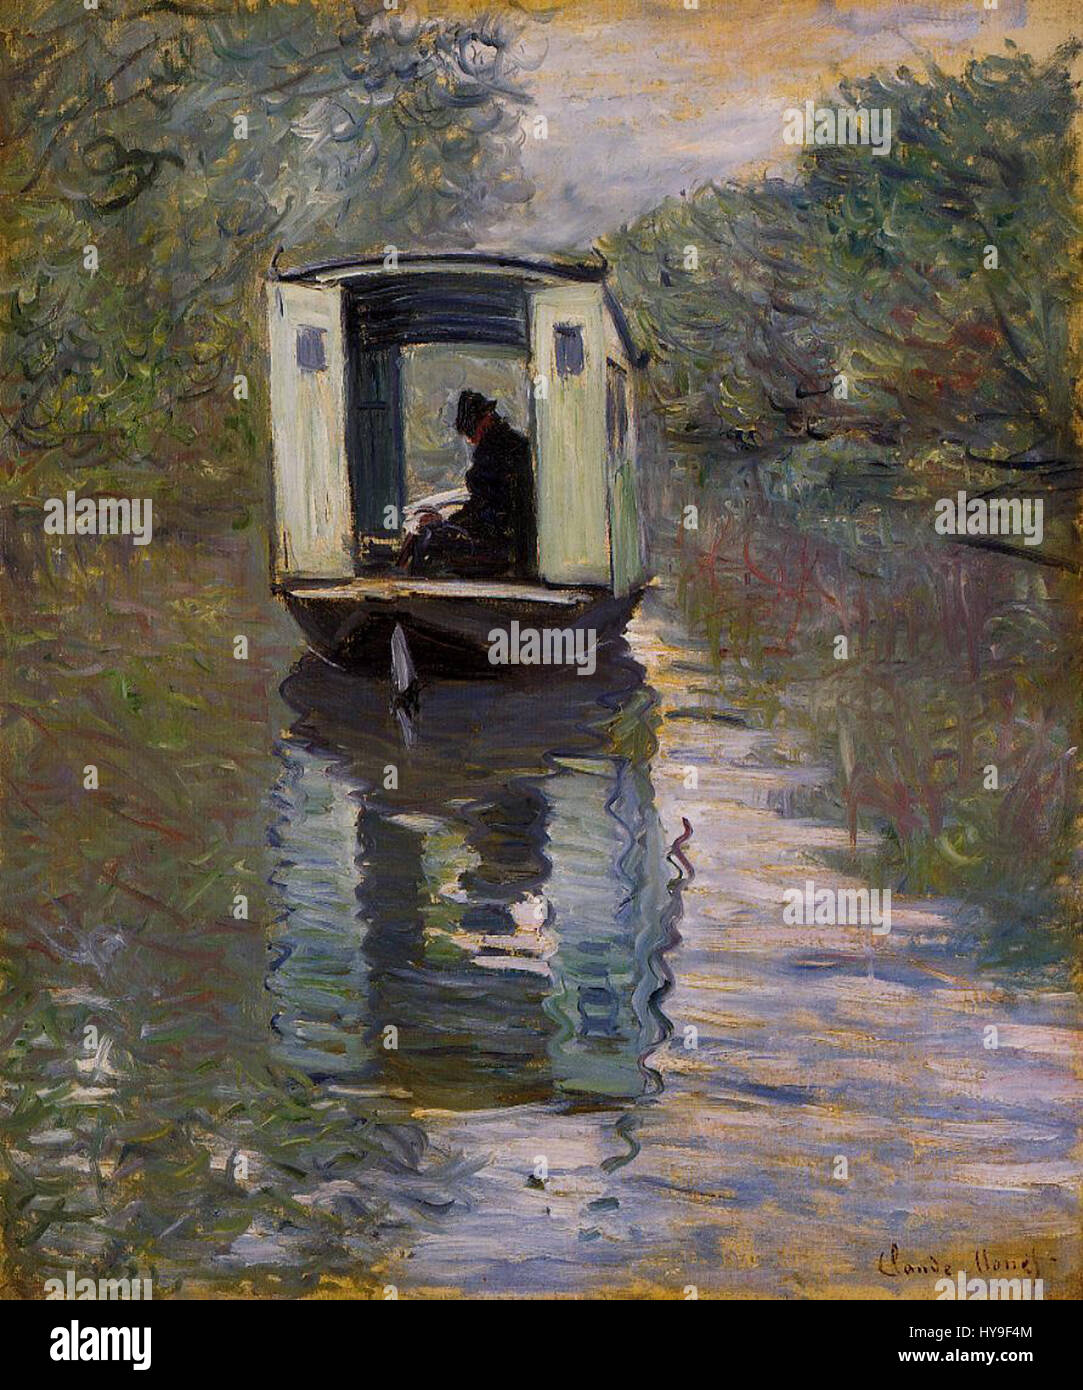 Claude Monet Le bateau atelier Stock Photo